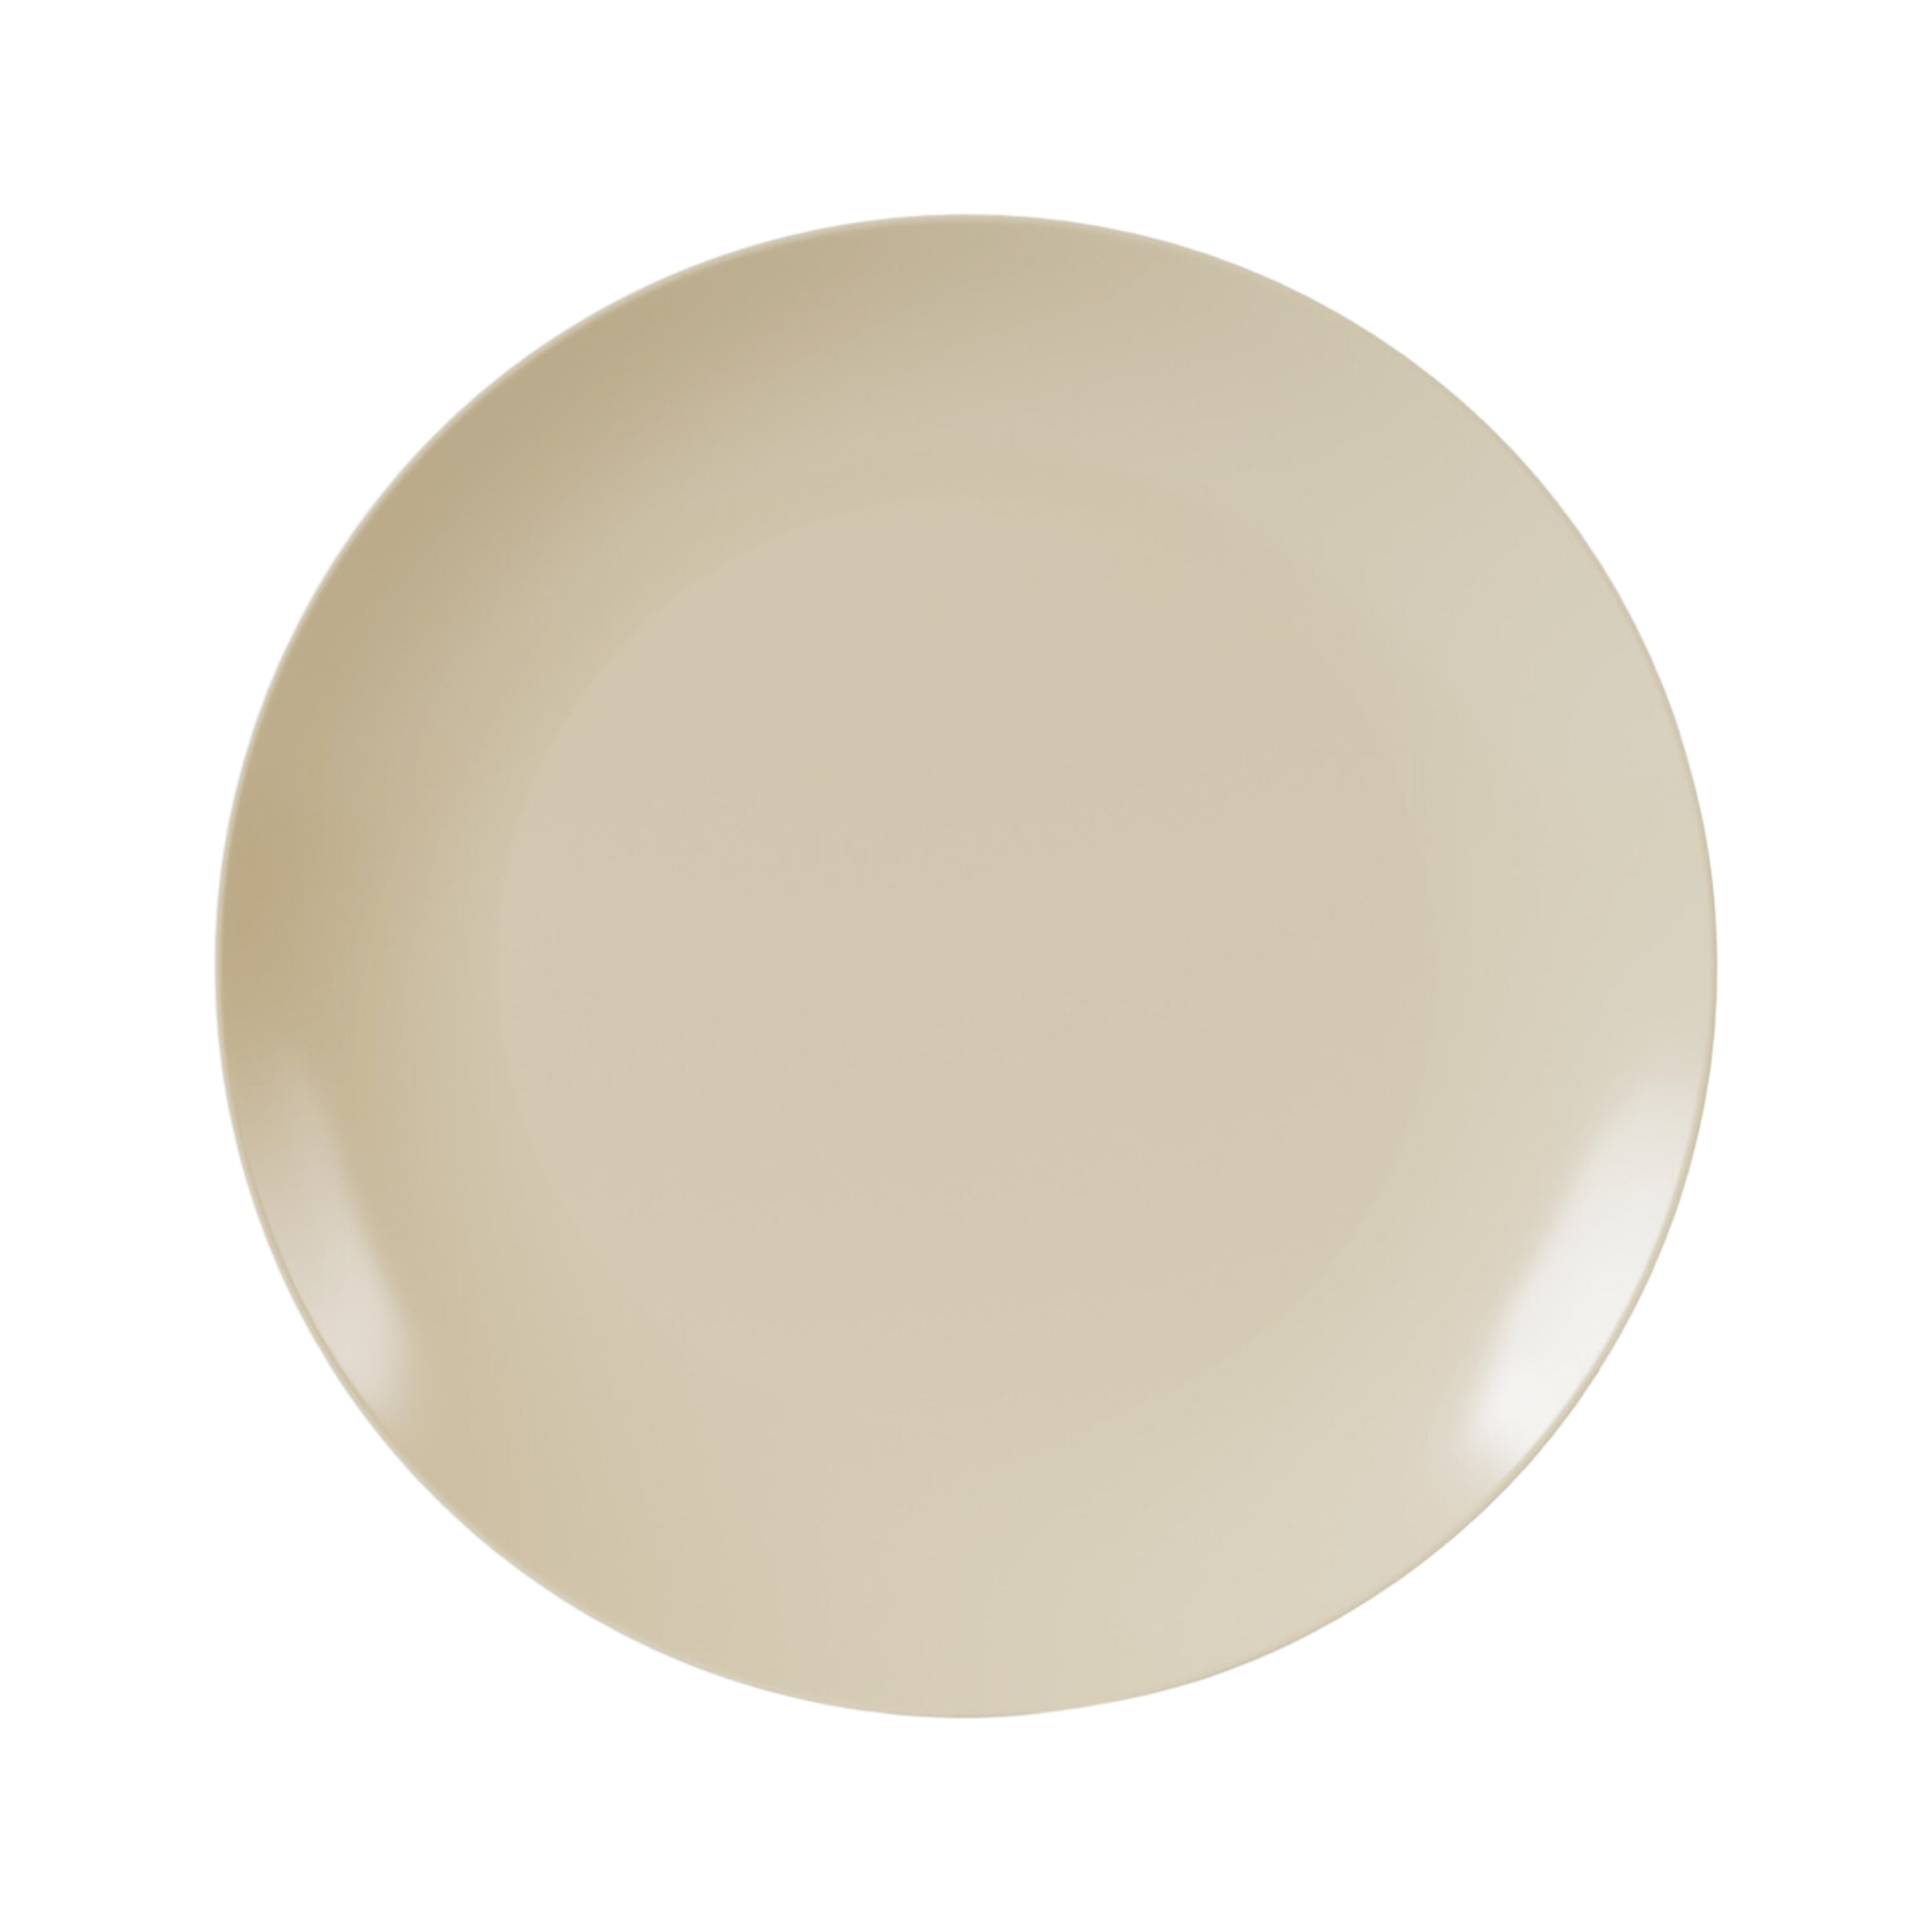 10" Macchiato Design Plastic Plates (120 Count)